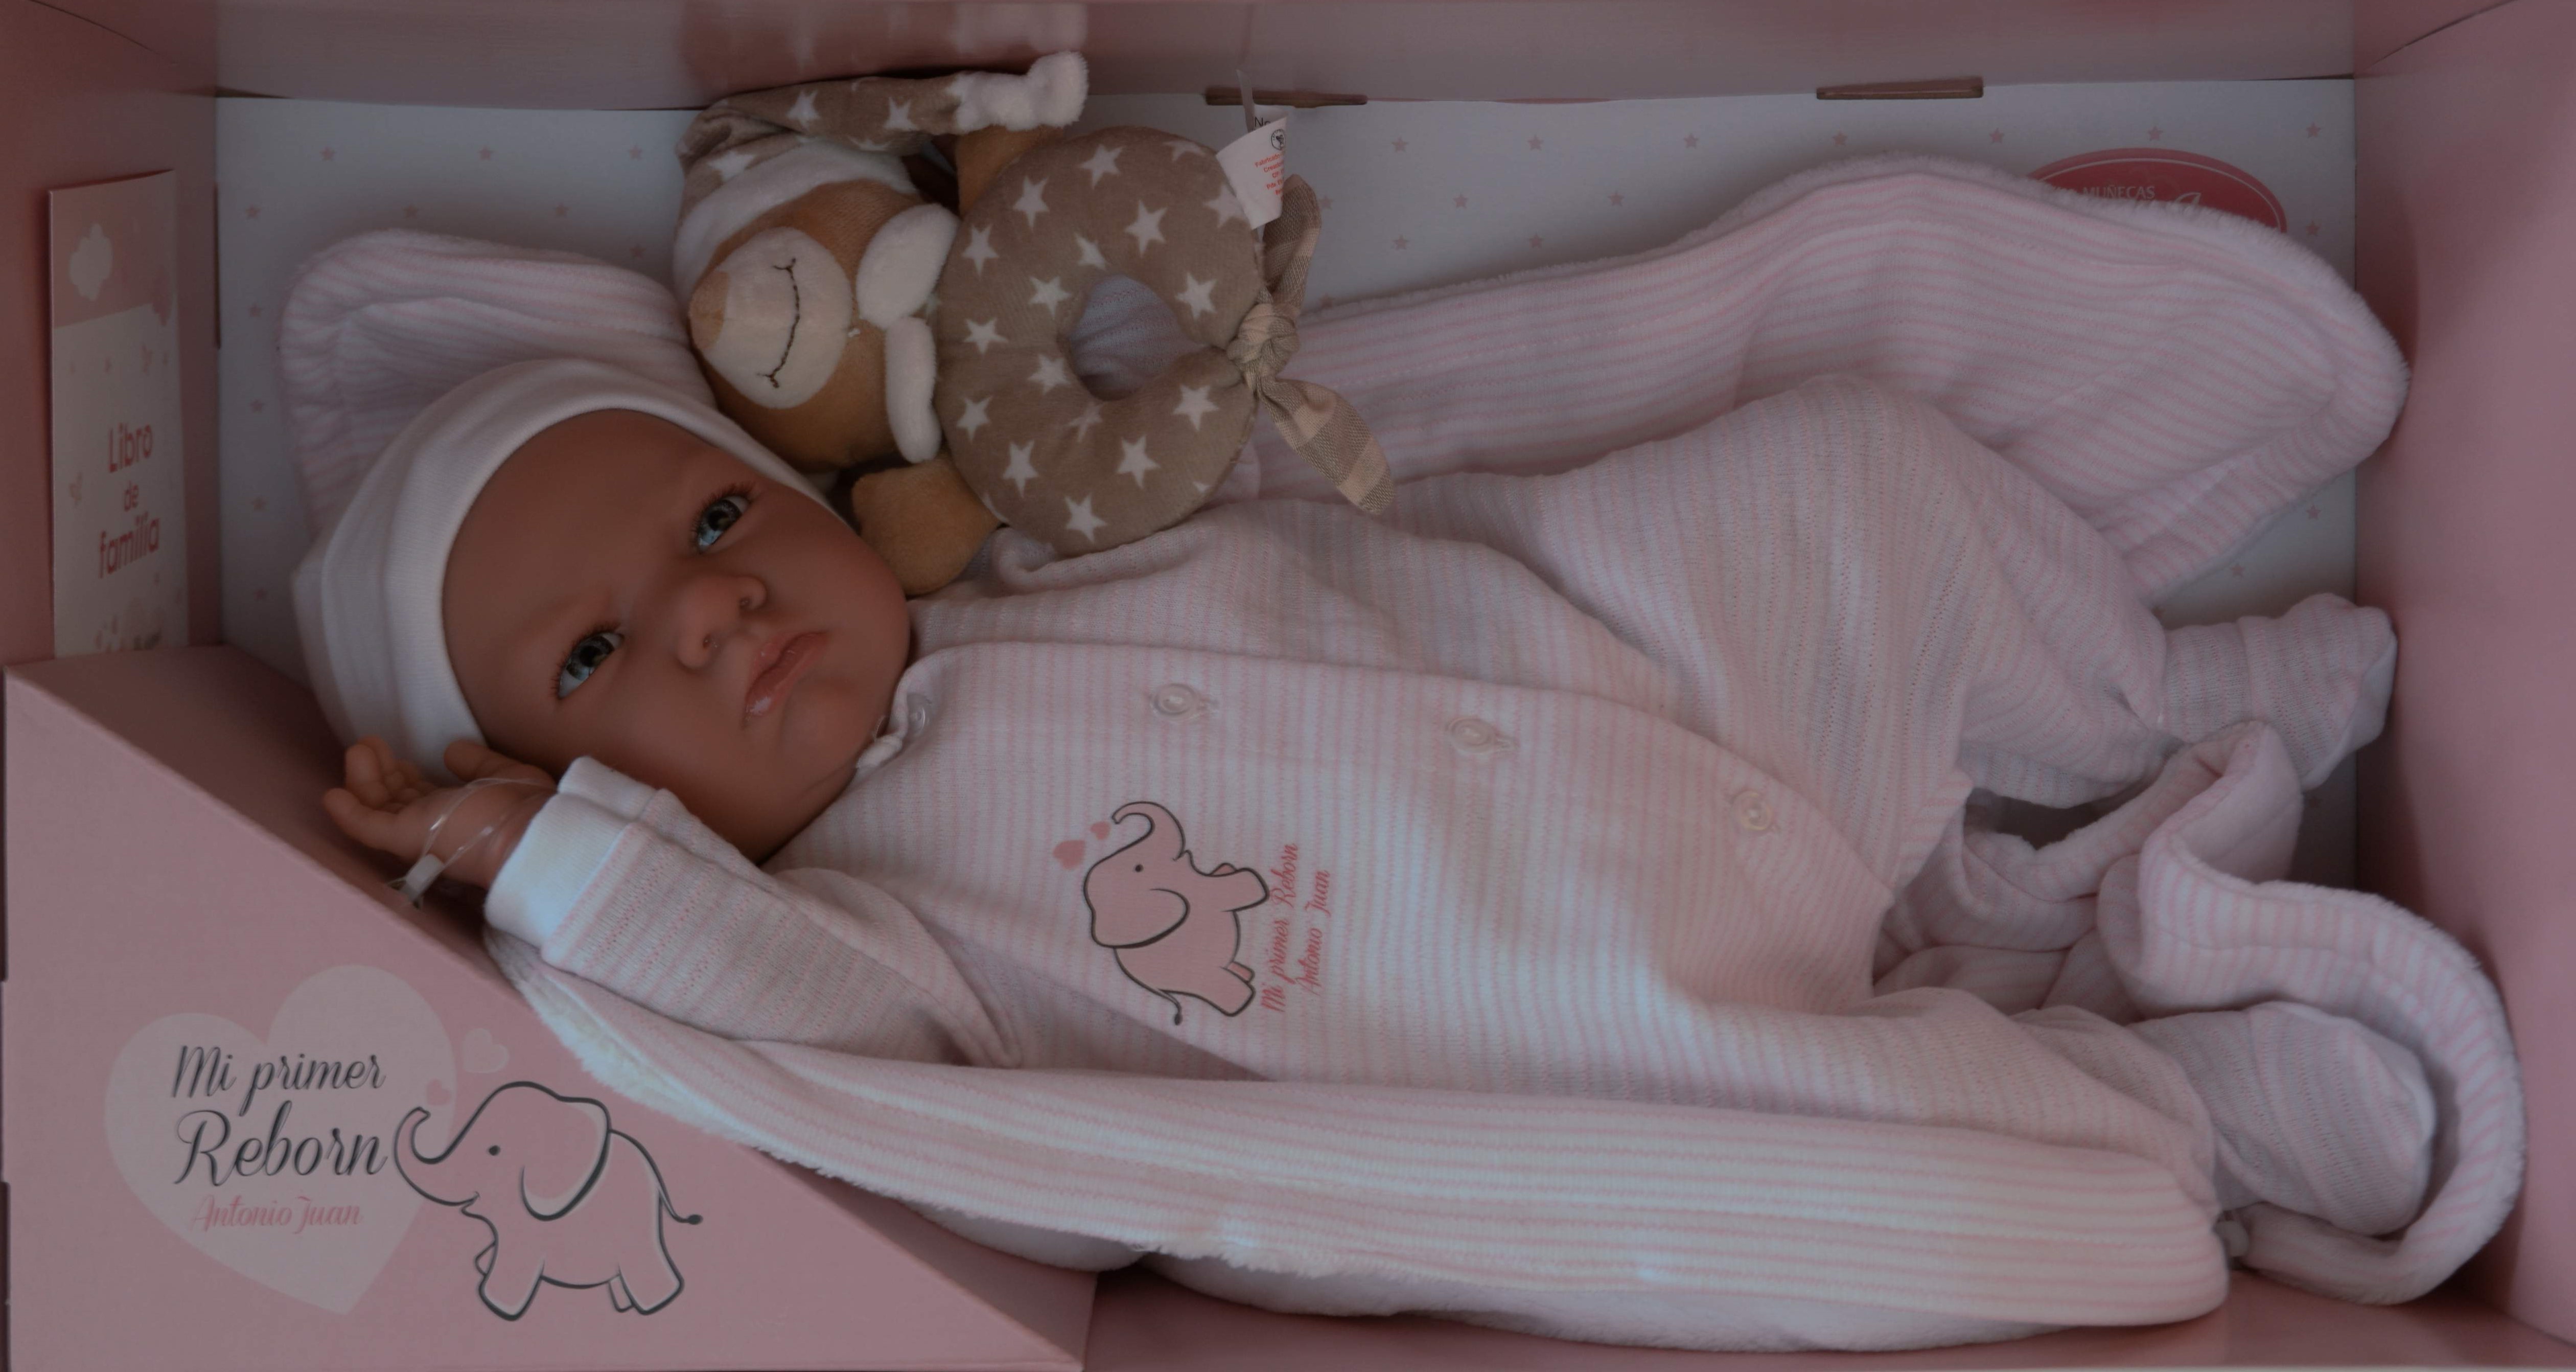 Reborn miminko - Můj první reborn - v růžovém oblečení od Antonio Juan